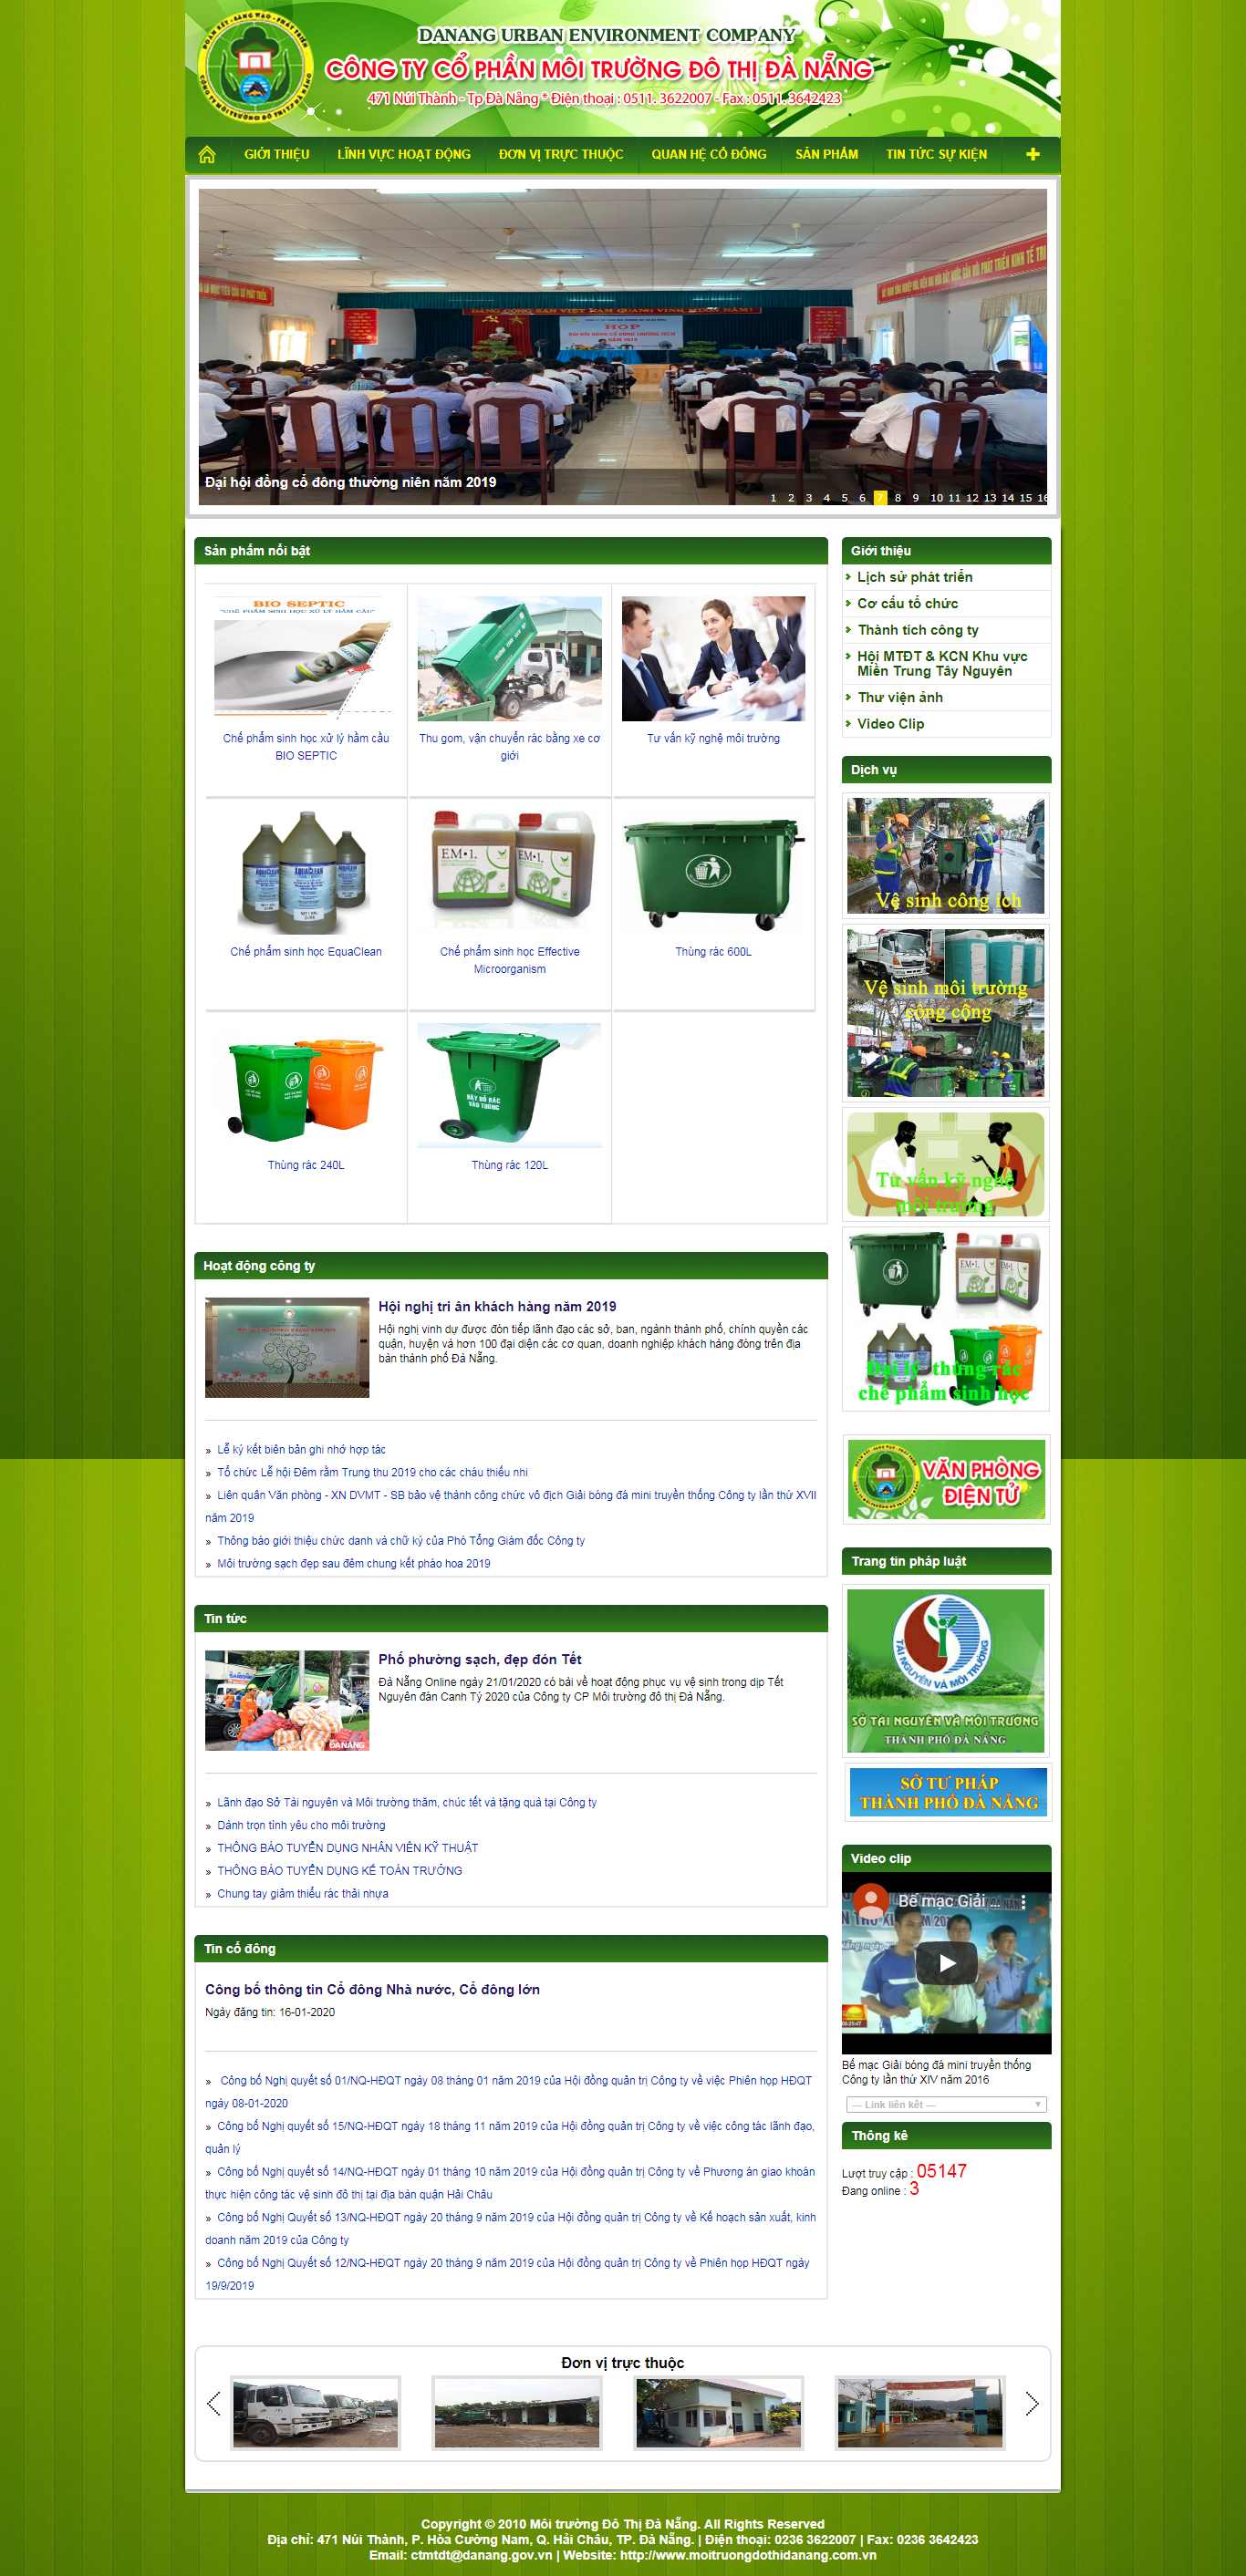 Thiết kế Website công ty môi trường - moitruongdothidanang.com.vn